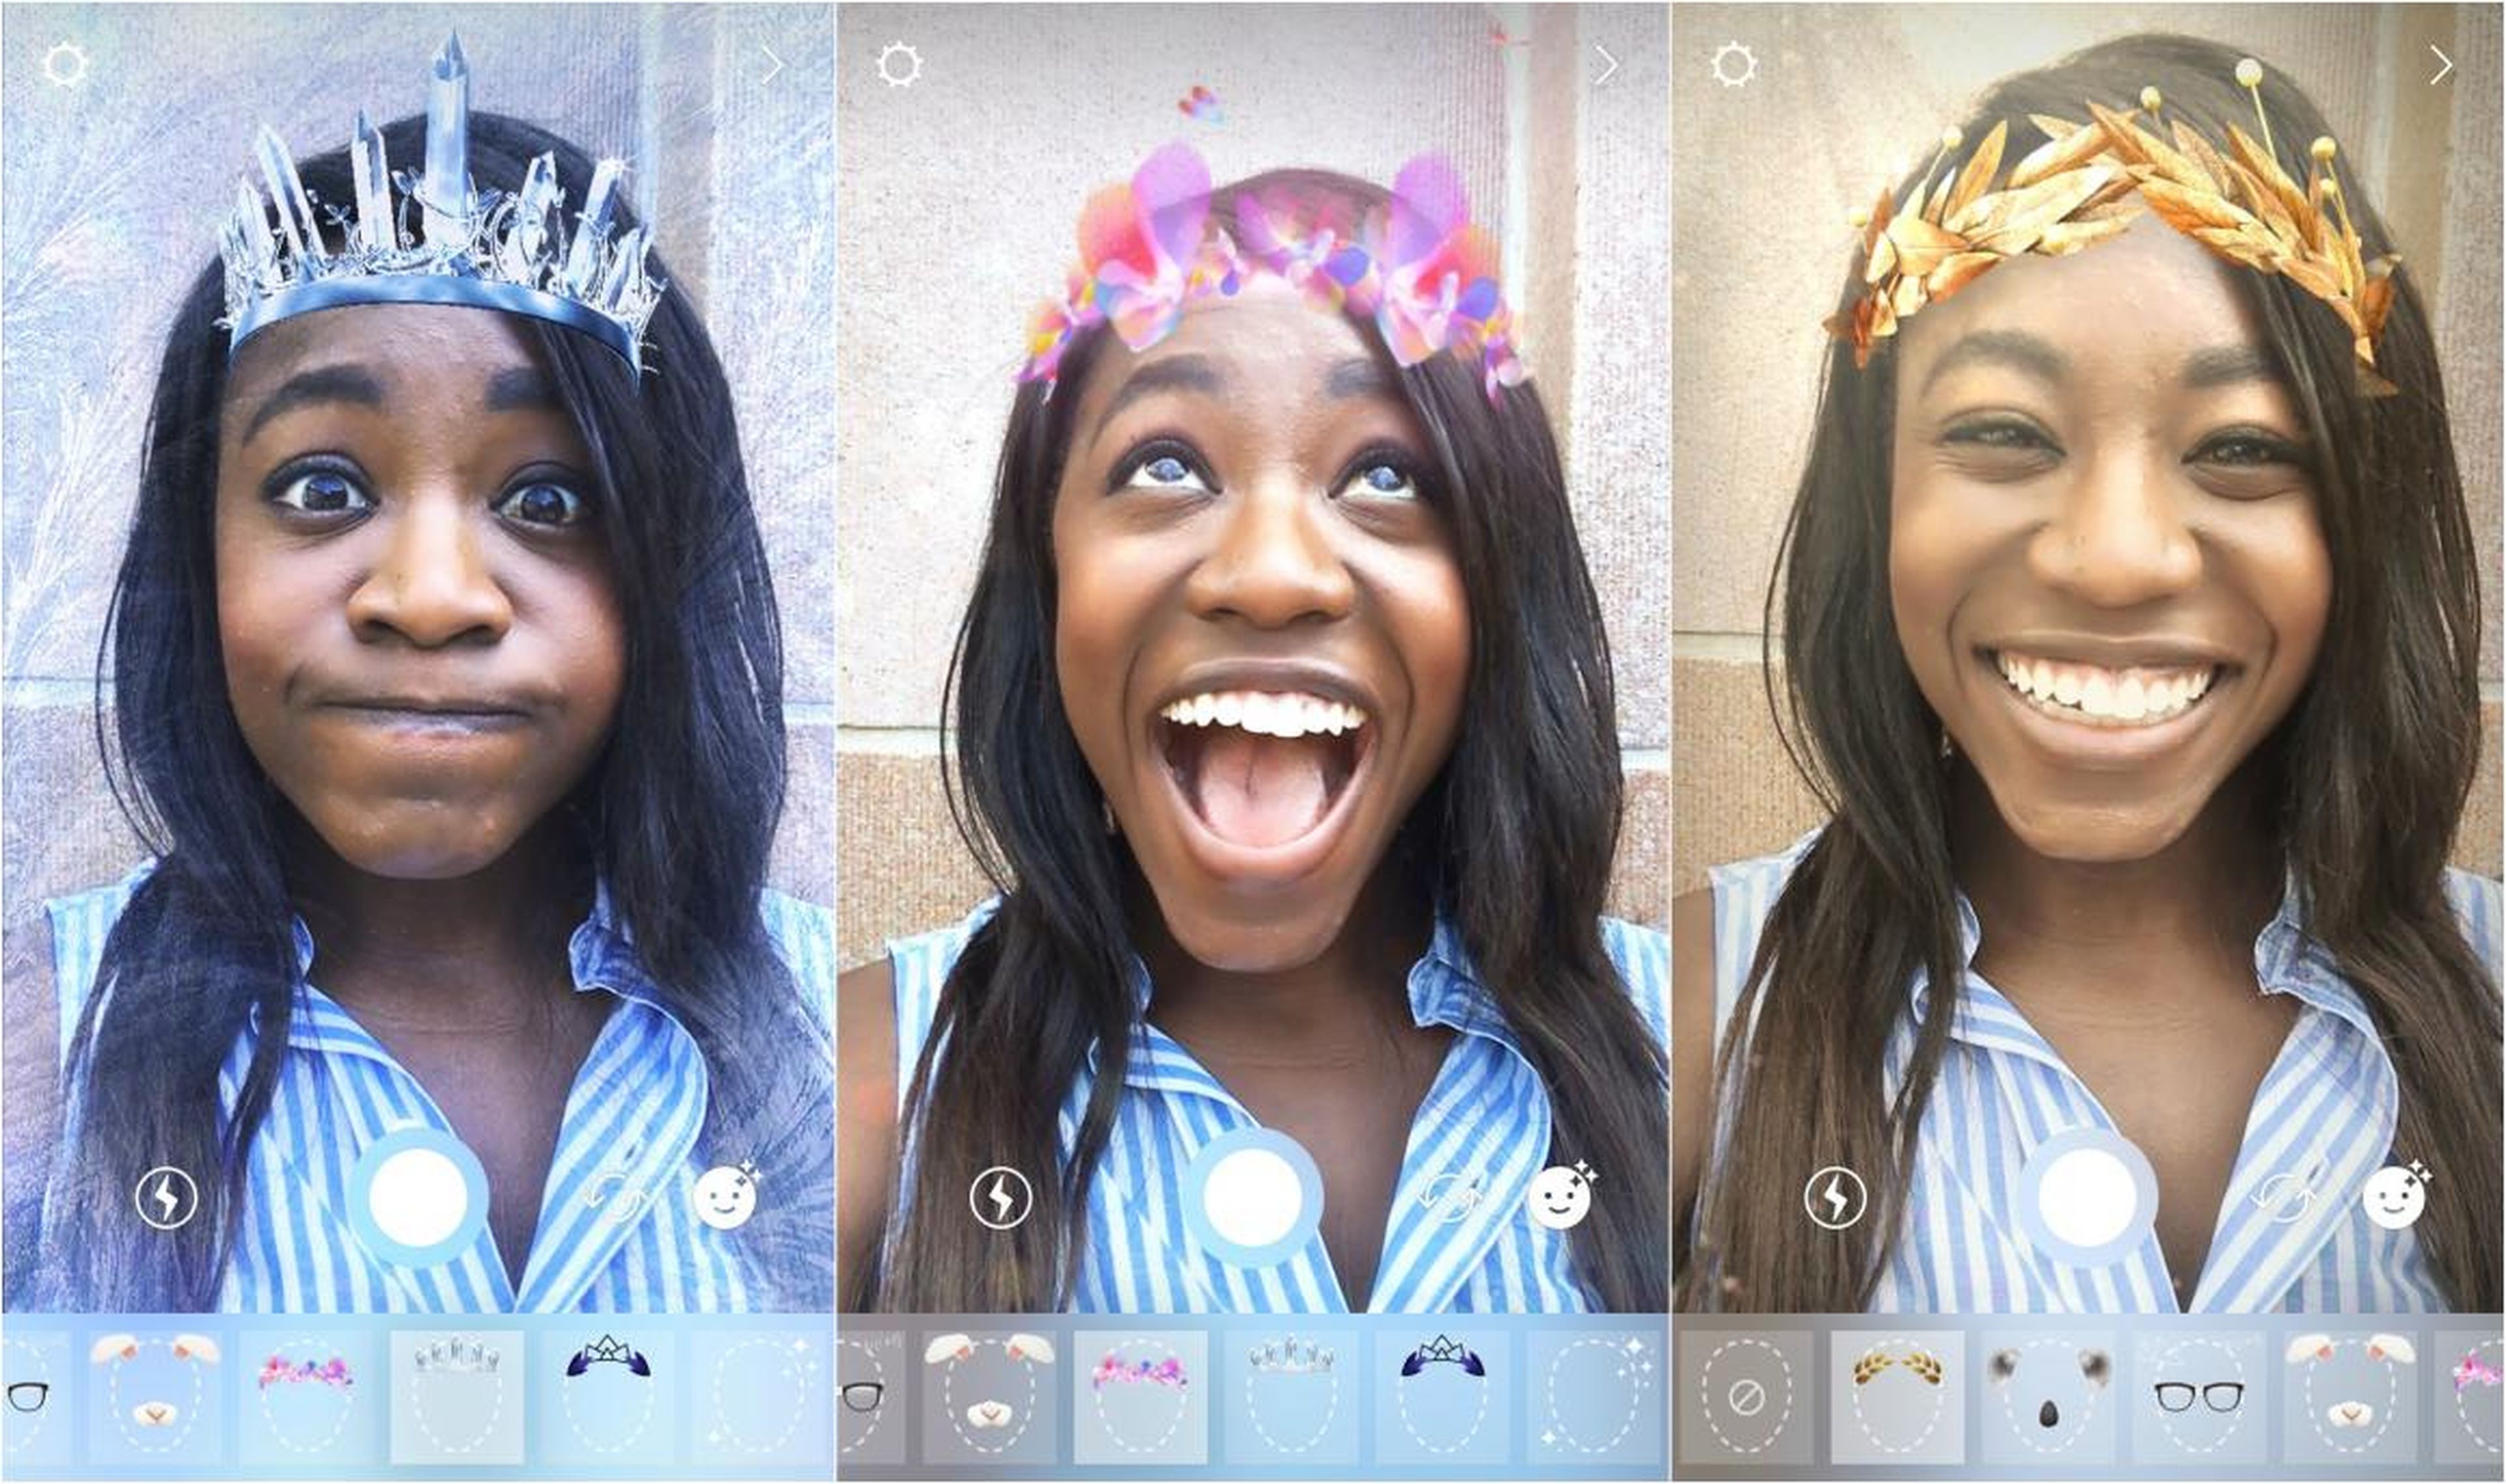 La 'dismorfia de Snapchat' crea ideales de belleza inalcanzables